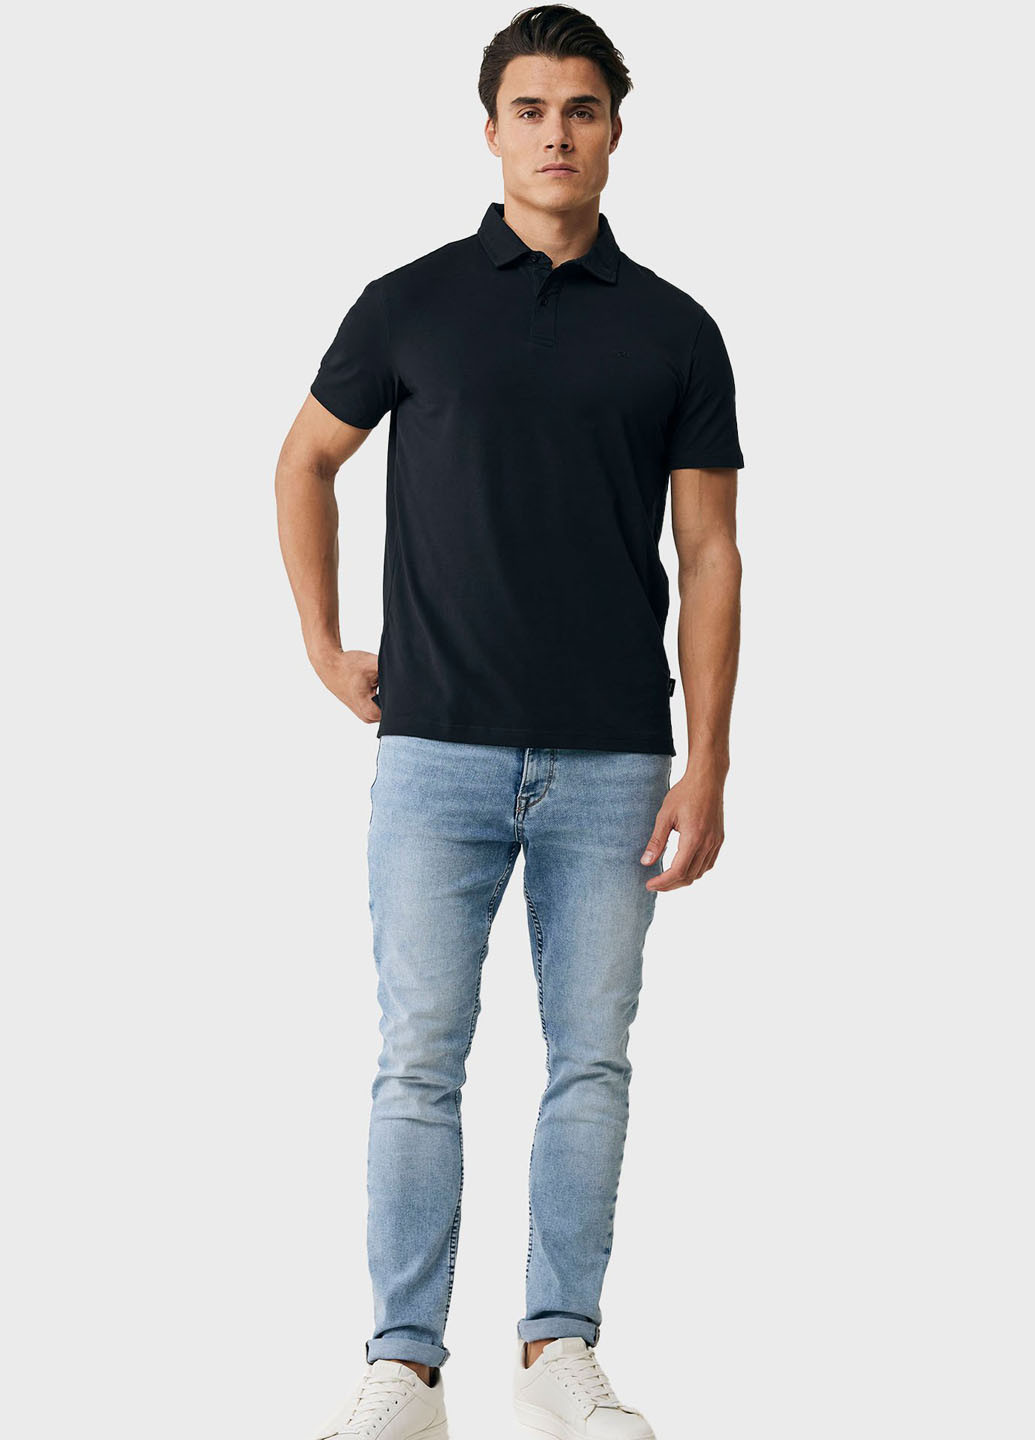 Черная футболка-поло для мужчин Mexx с логотипом